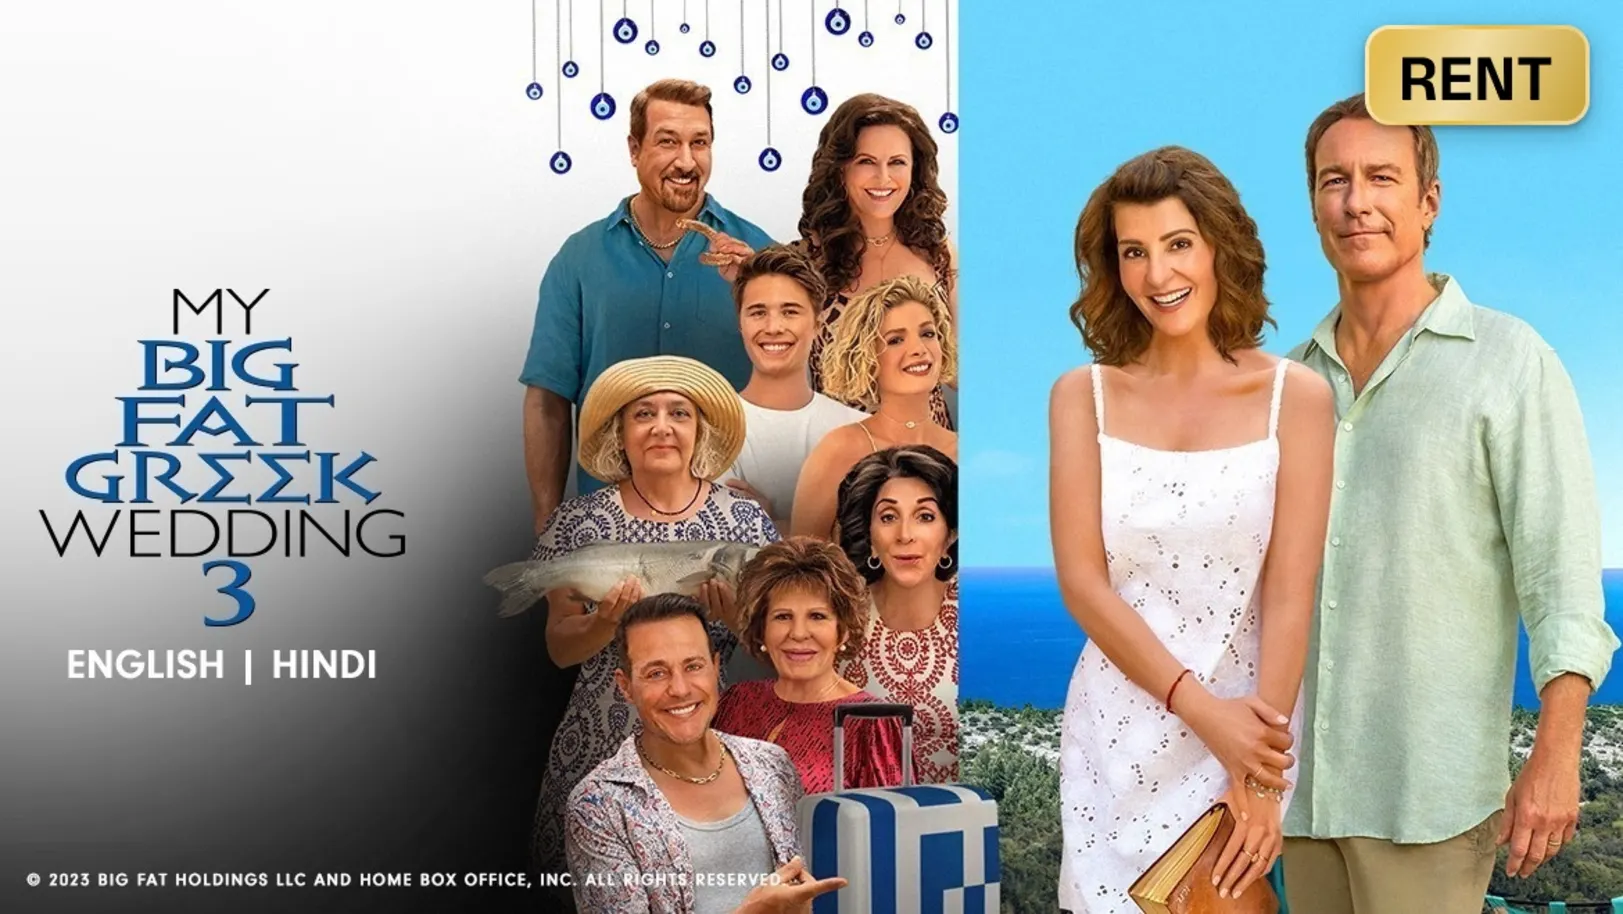 My Big Fat Greek Wedding 3 Movie